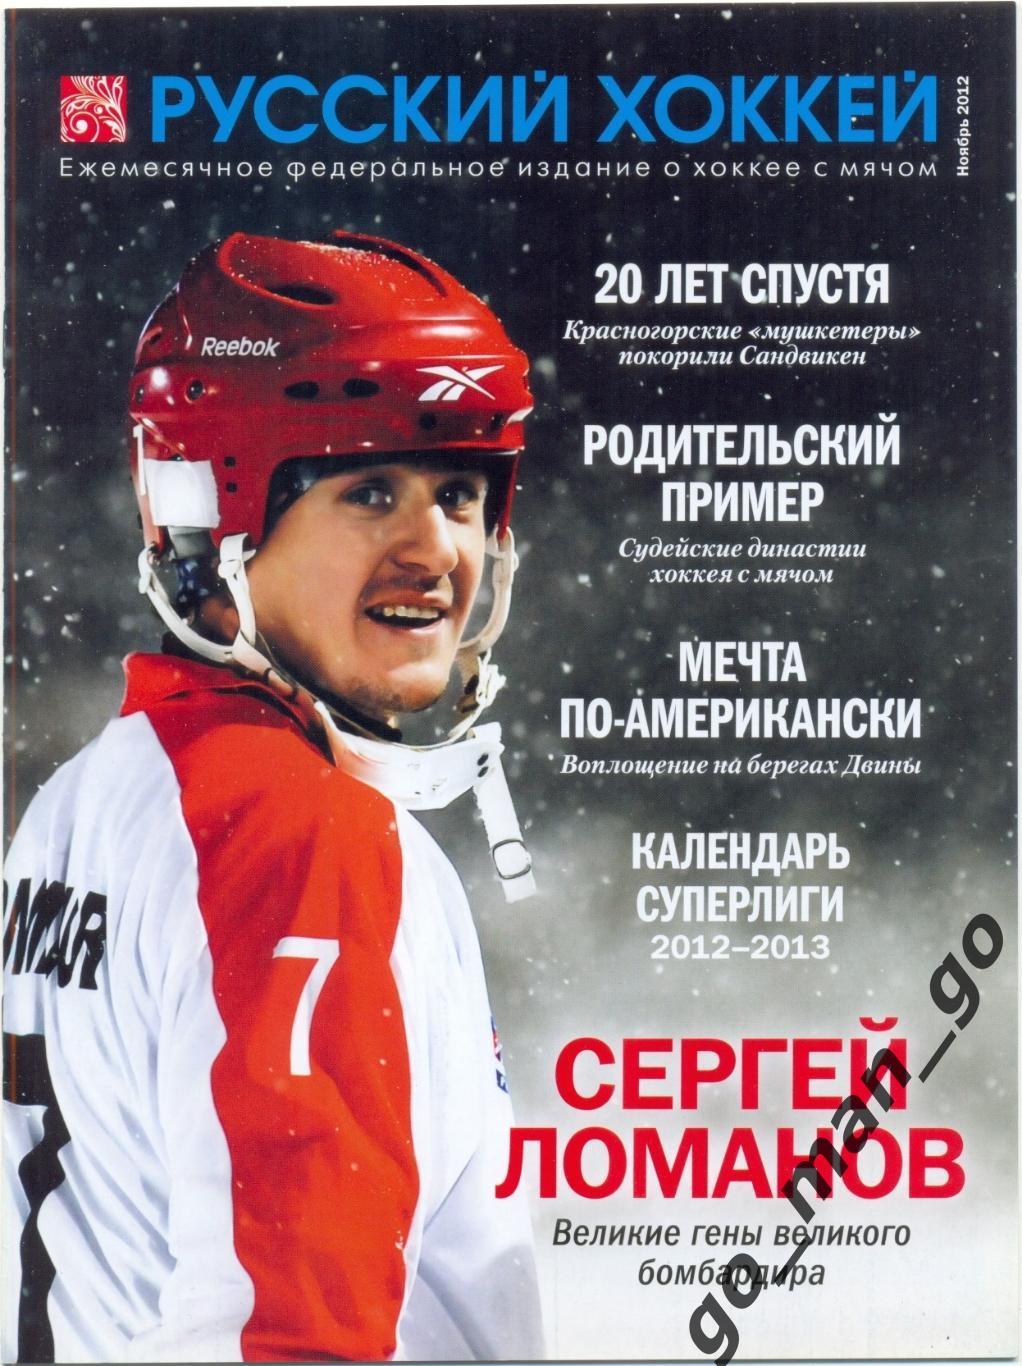 Журнал РУССКИЙ ХОККЕЙ, ноябрь 2012.